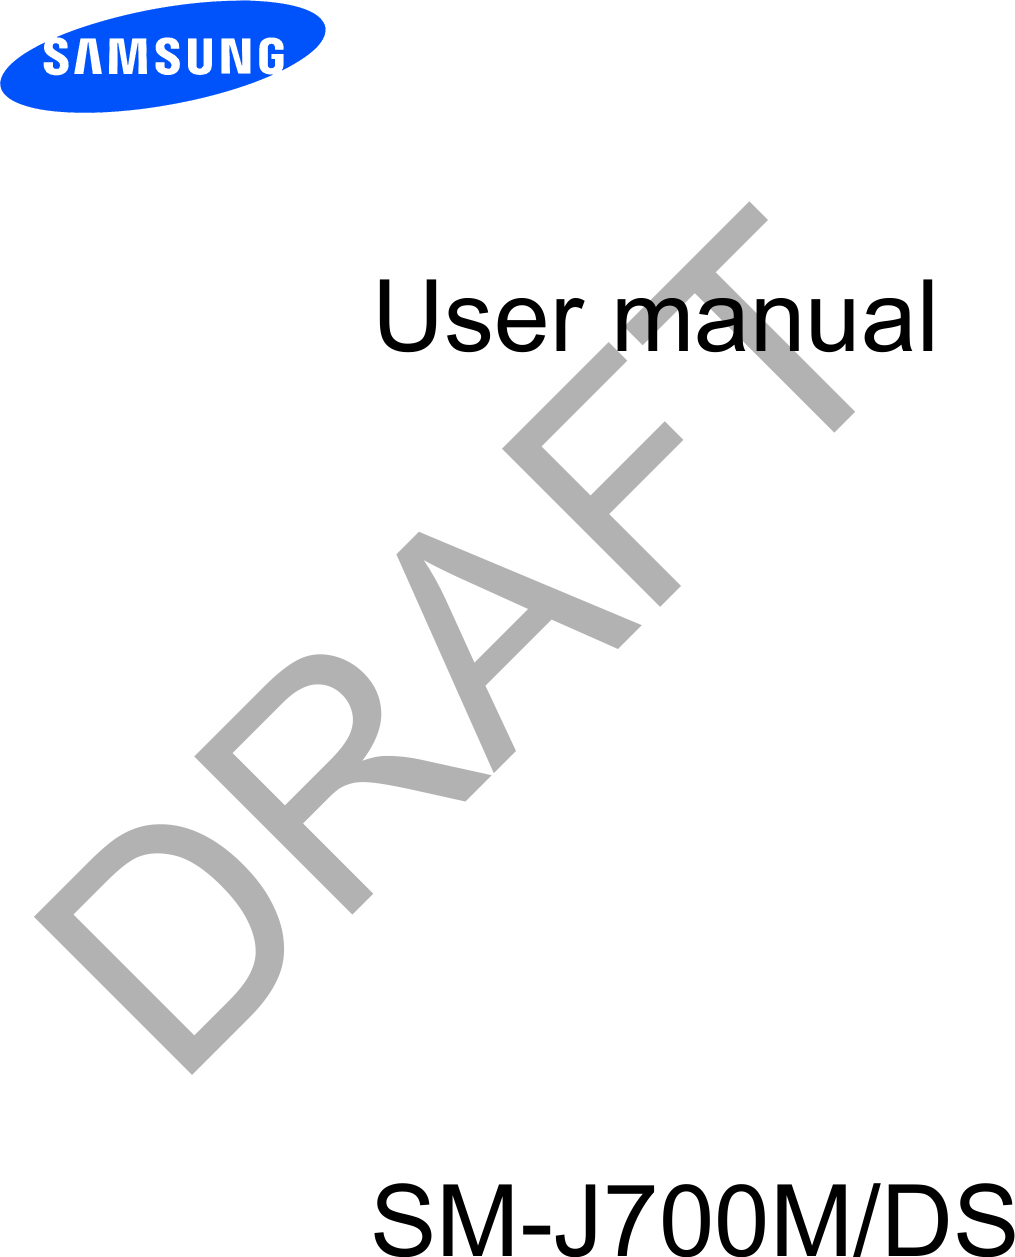 User manualSM-J700M/DSDRAFT